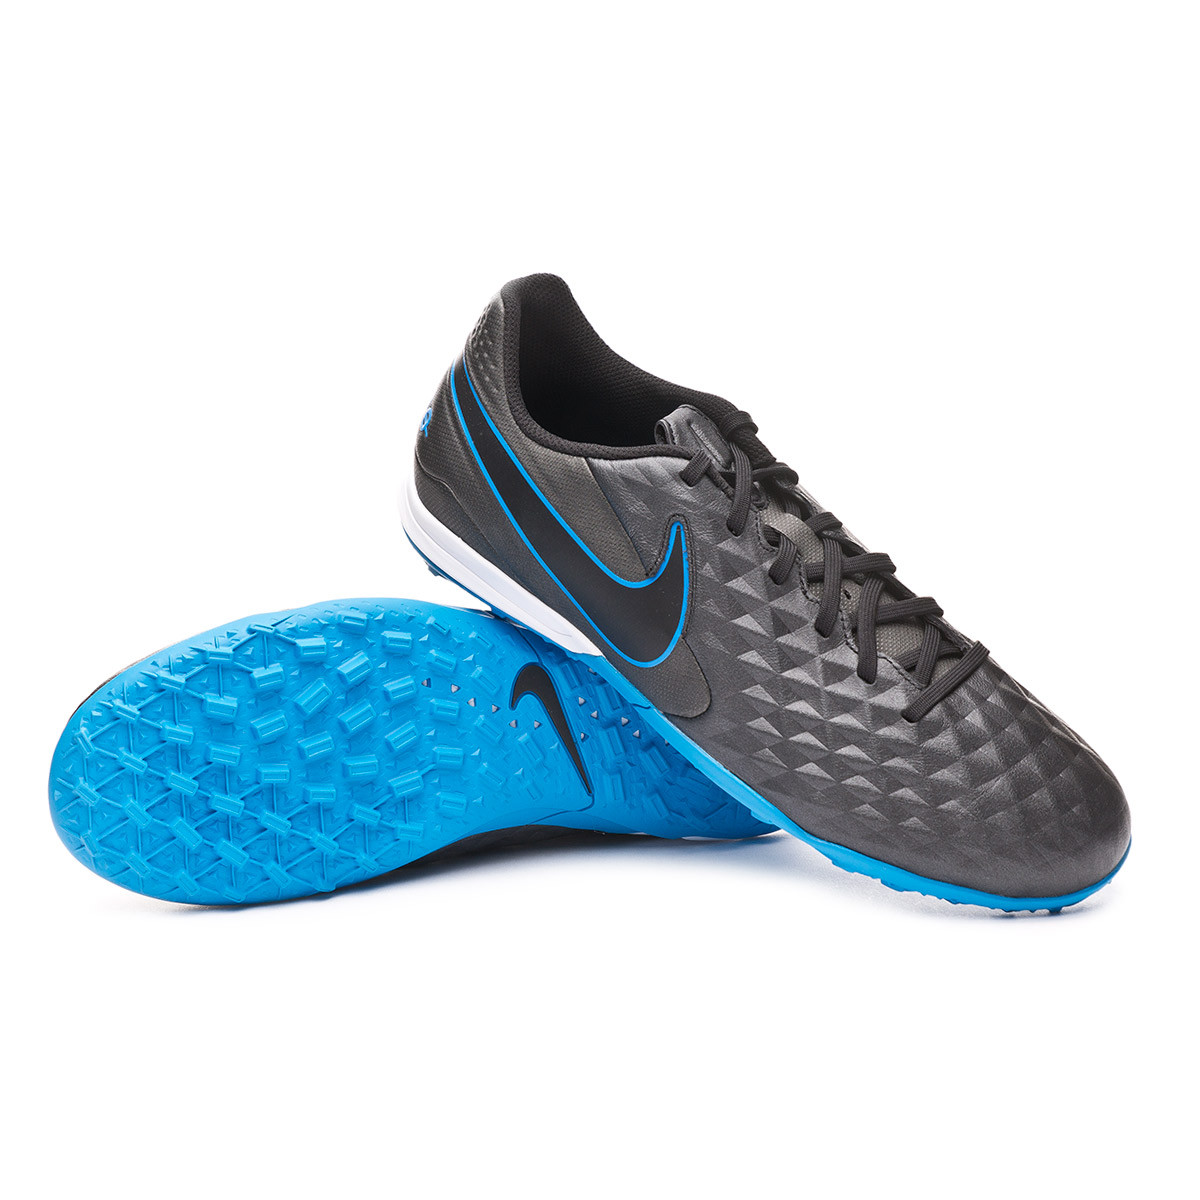 Zapatos de fútbol Nike Tiempo Legend VIII Academy Turf Black-Blue hero -  Tienda de fútbol Fútbol Emotion